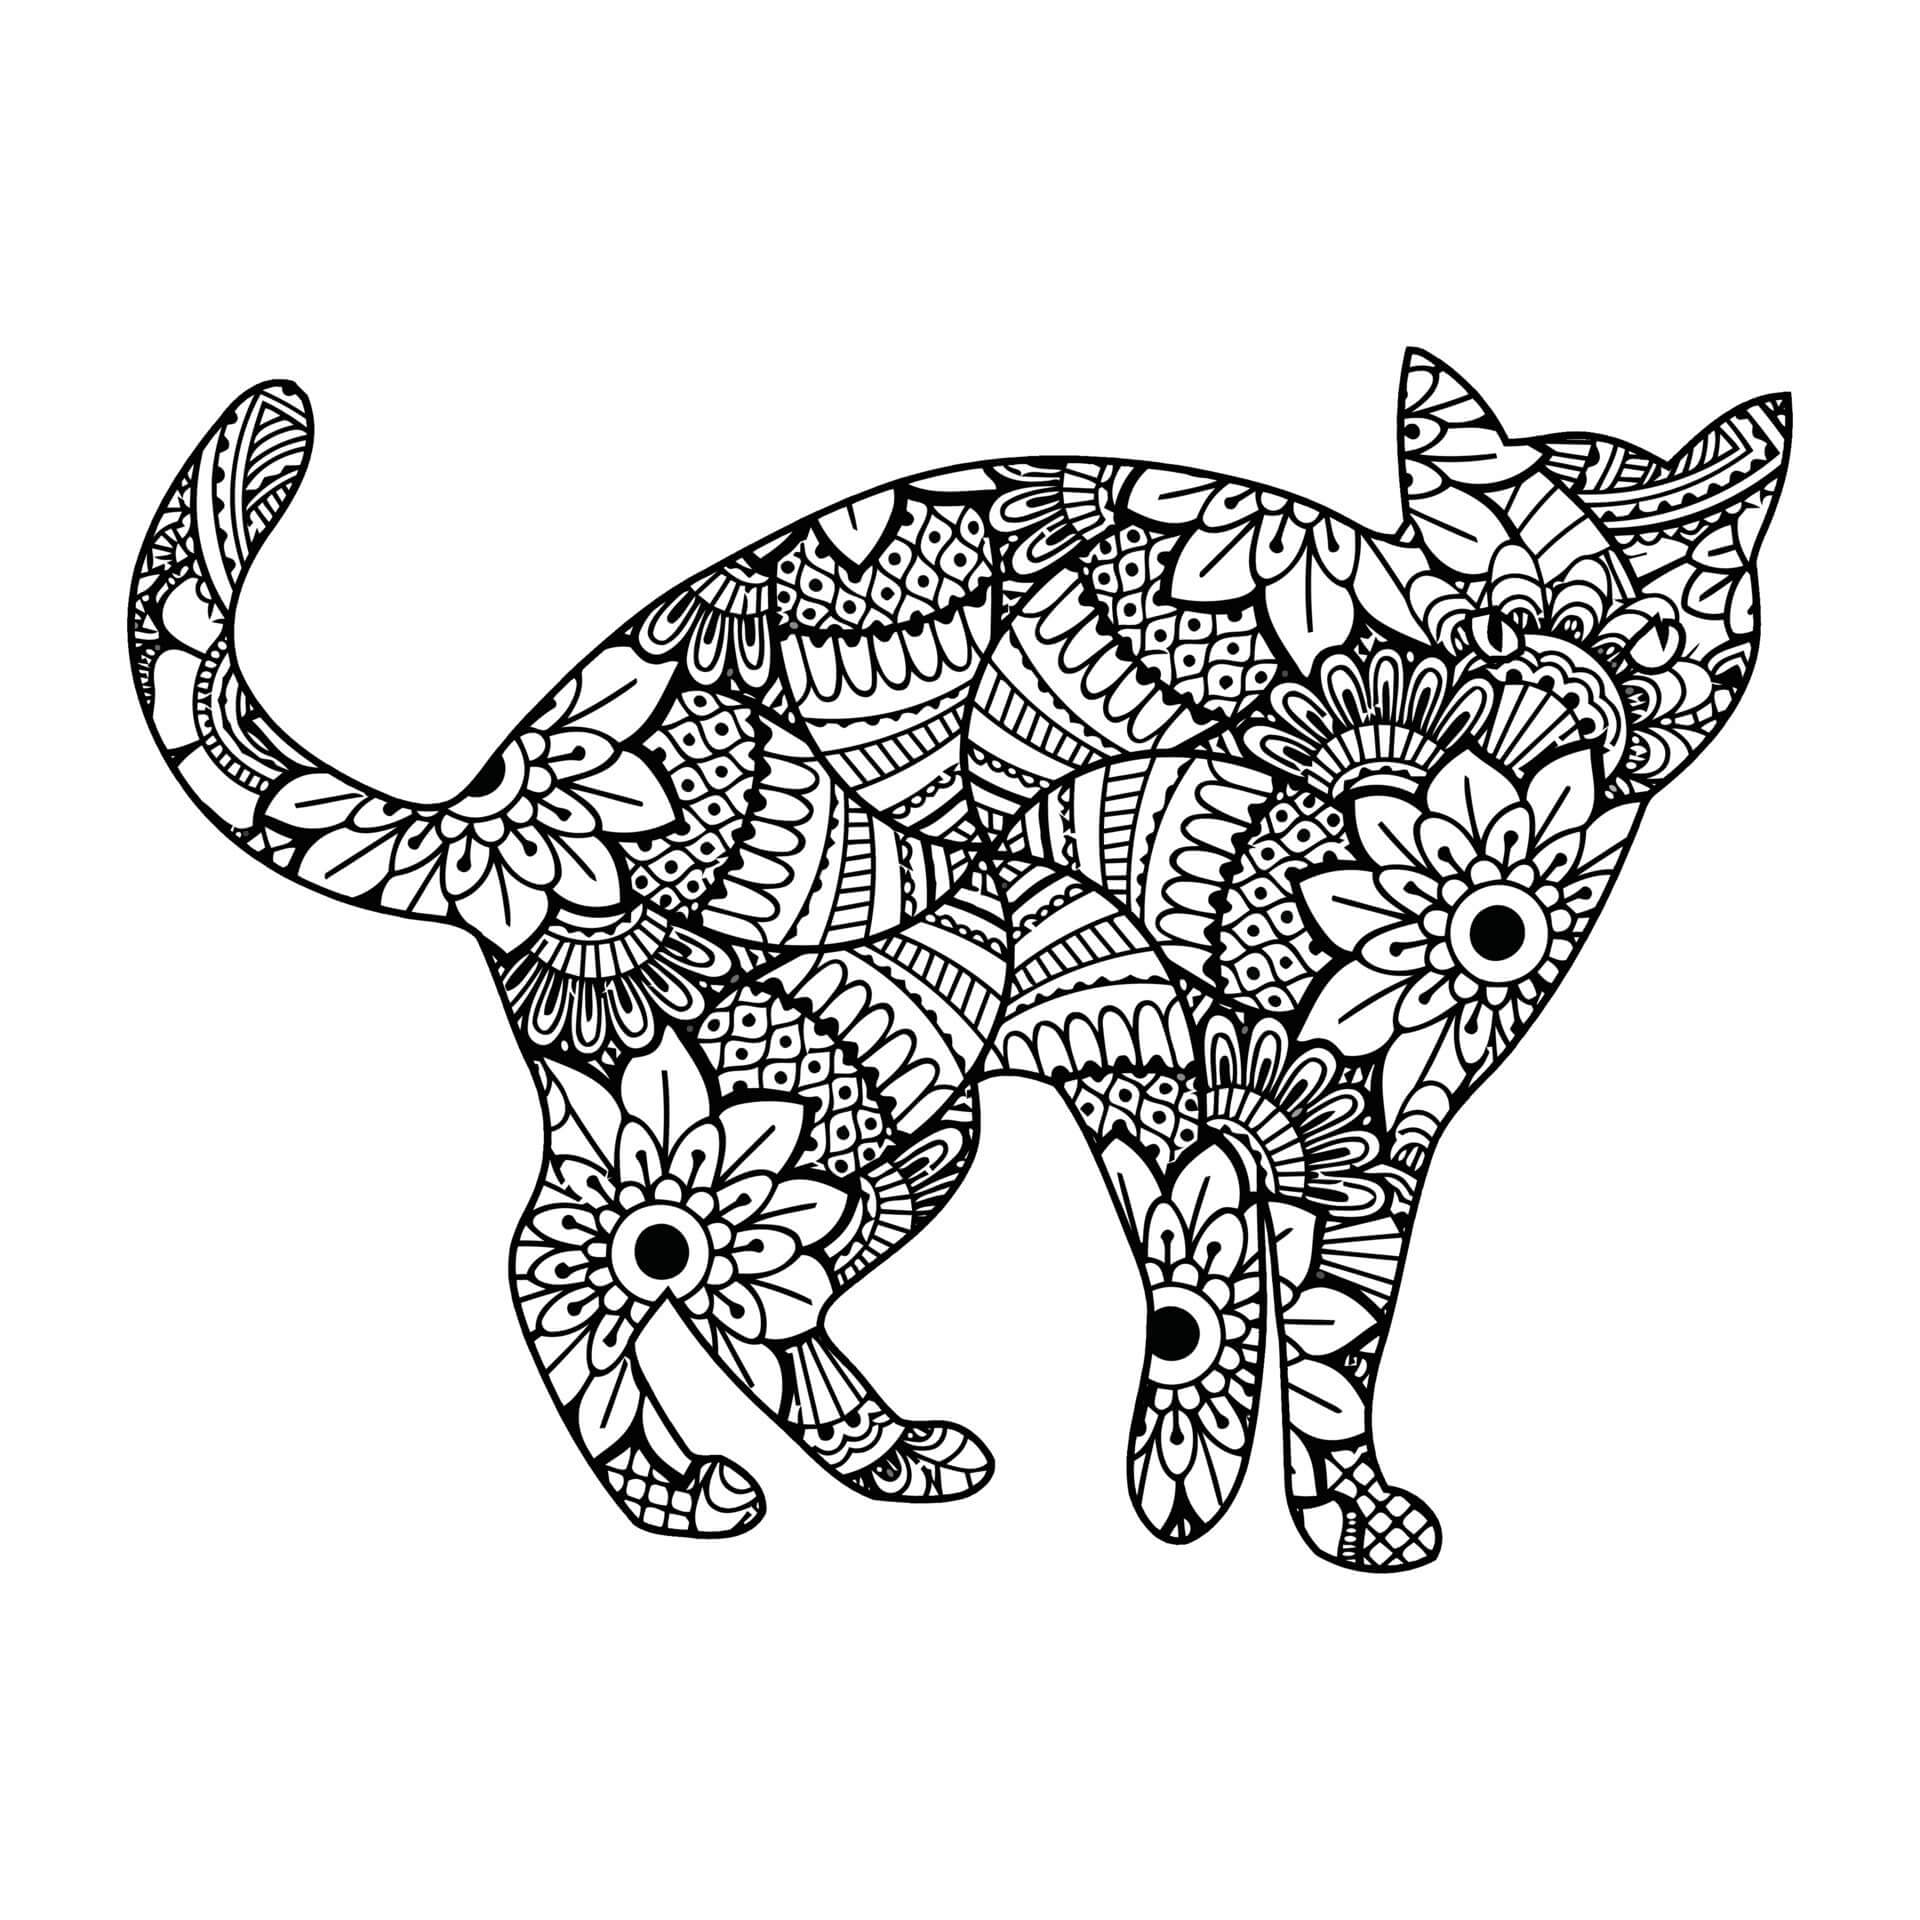 Mandala Cat Coloring Page – Sheet 6 Mandalas